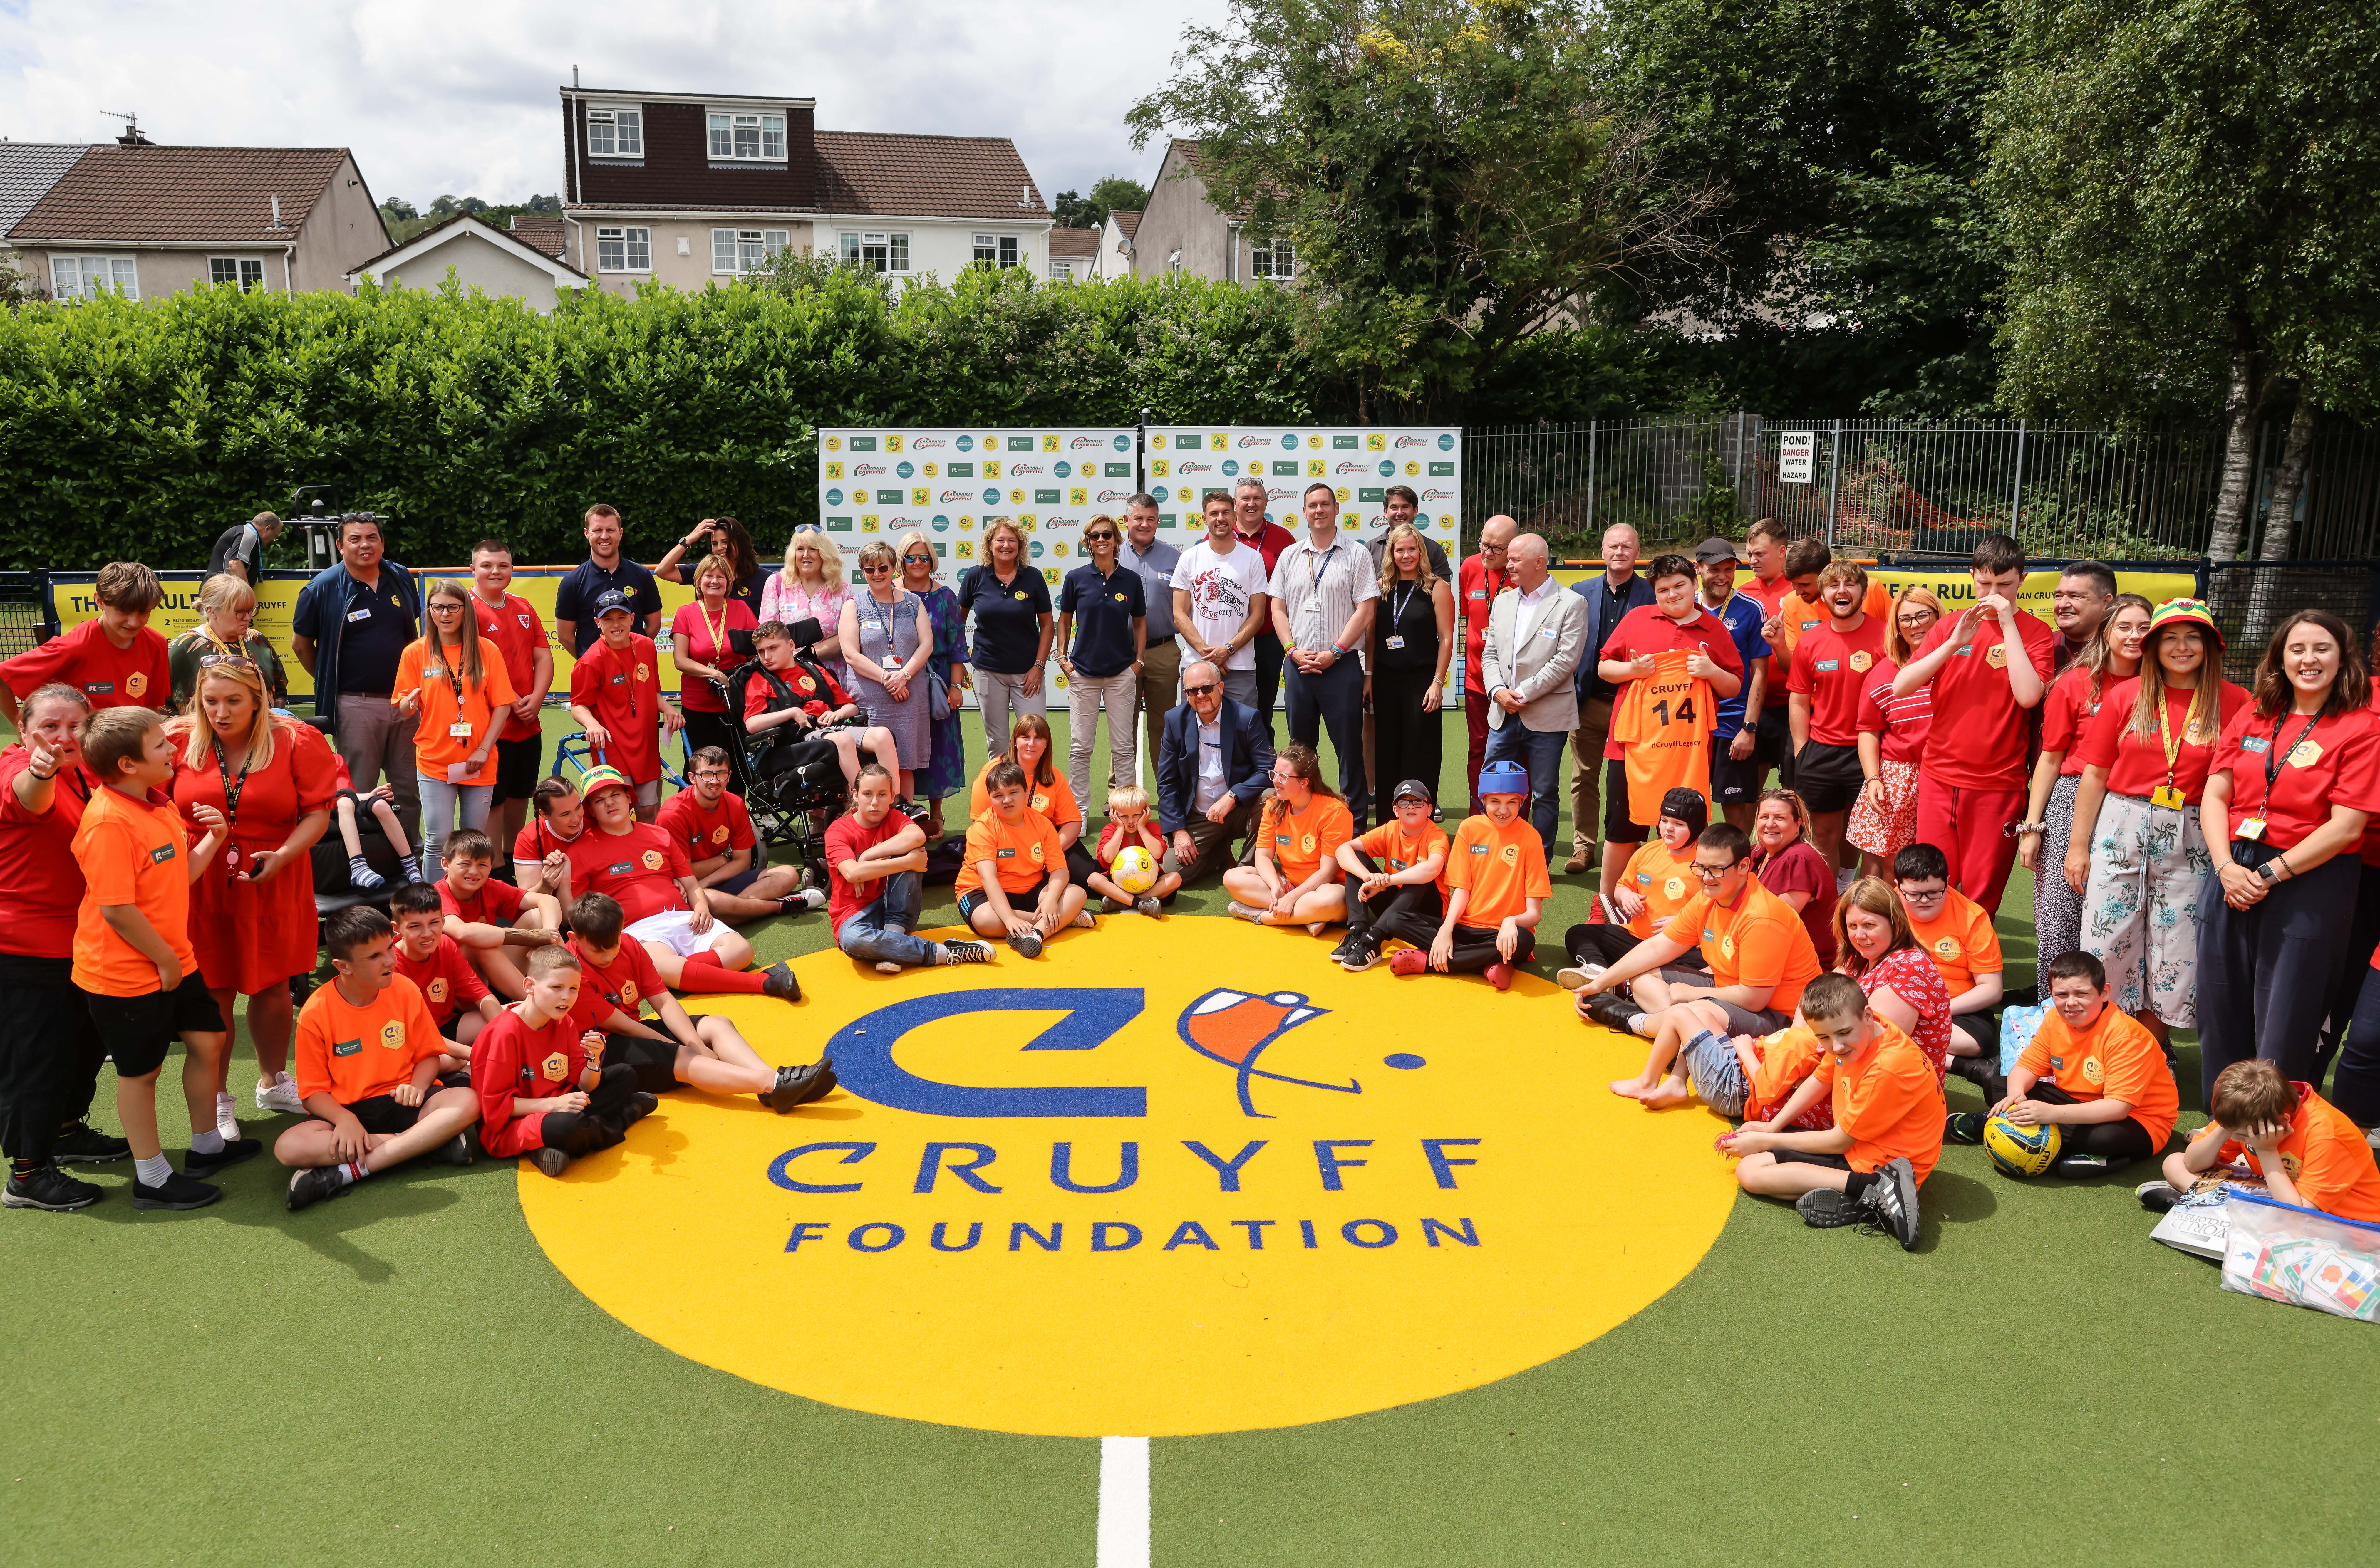 Ramseys Stiftung war in einer gemeinsamen Initiative mit der Johan-Cruyff-Stiftung maßgeblich an der Errichtung des neuen Multisportplatzes in der Nähe seiner Heimatstadt Caerphilly beteiligt.